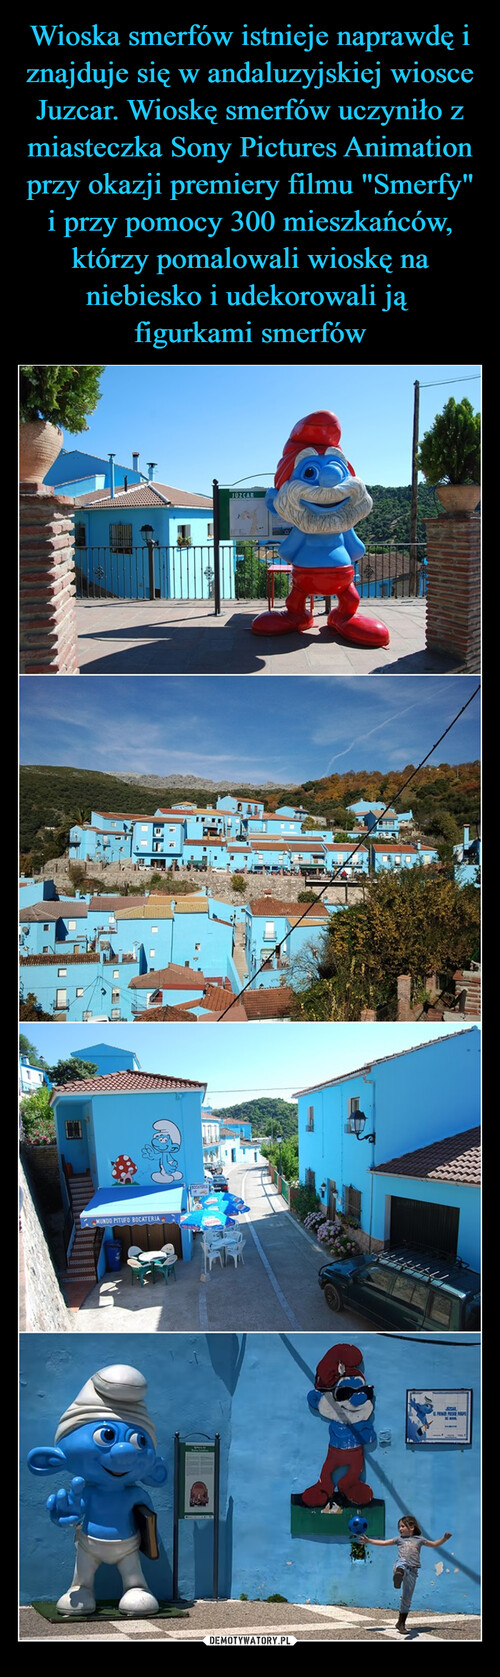 Wioska smerfów istnieje naprawdę i znajduje się w andaluzyjskiej wiosce Juzcar. Wioskę smerfów uczyniło z miasteczka Sony Pictures Animation przy okazji premiery filmu "Smerfy" i przy pomocy 300 mieszkańców, którzy pomalowali wioskę na niebiesko i udekorowali ją 
figurkami smerfów